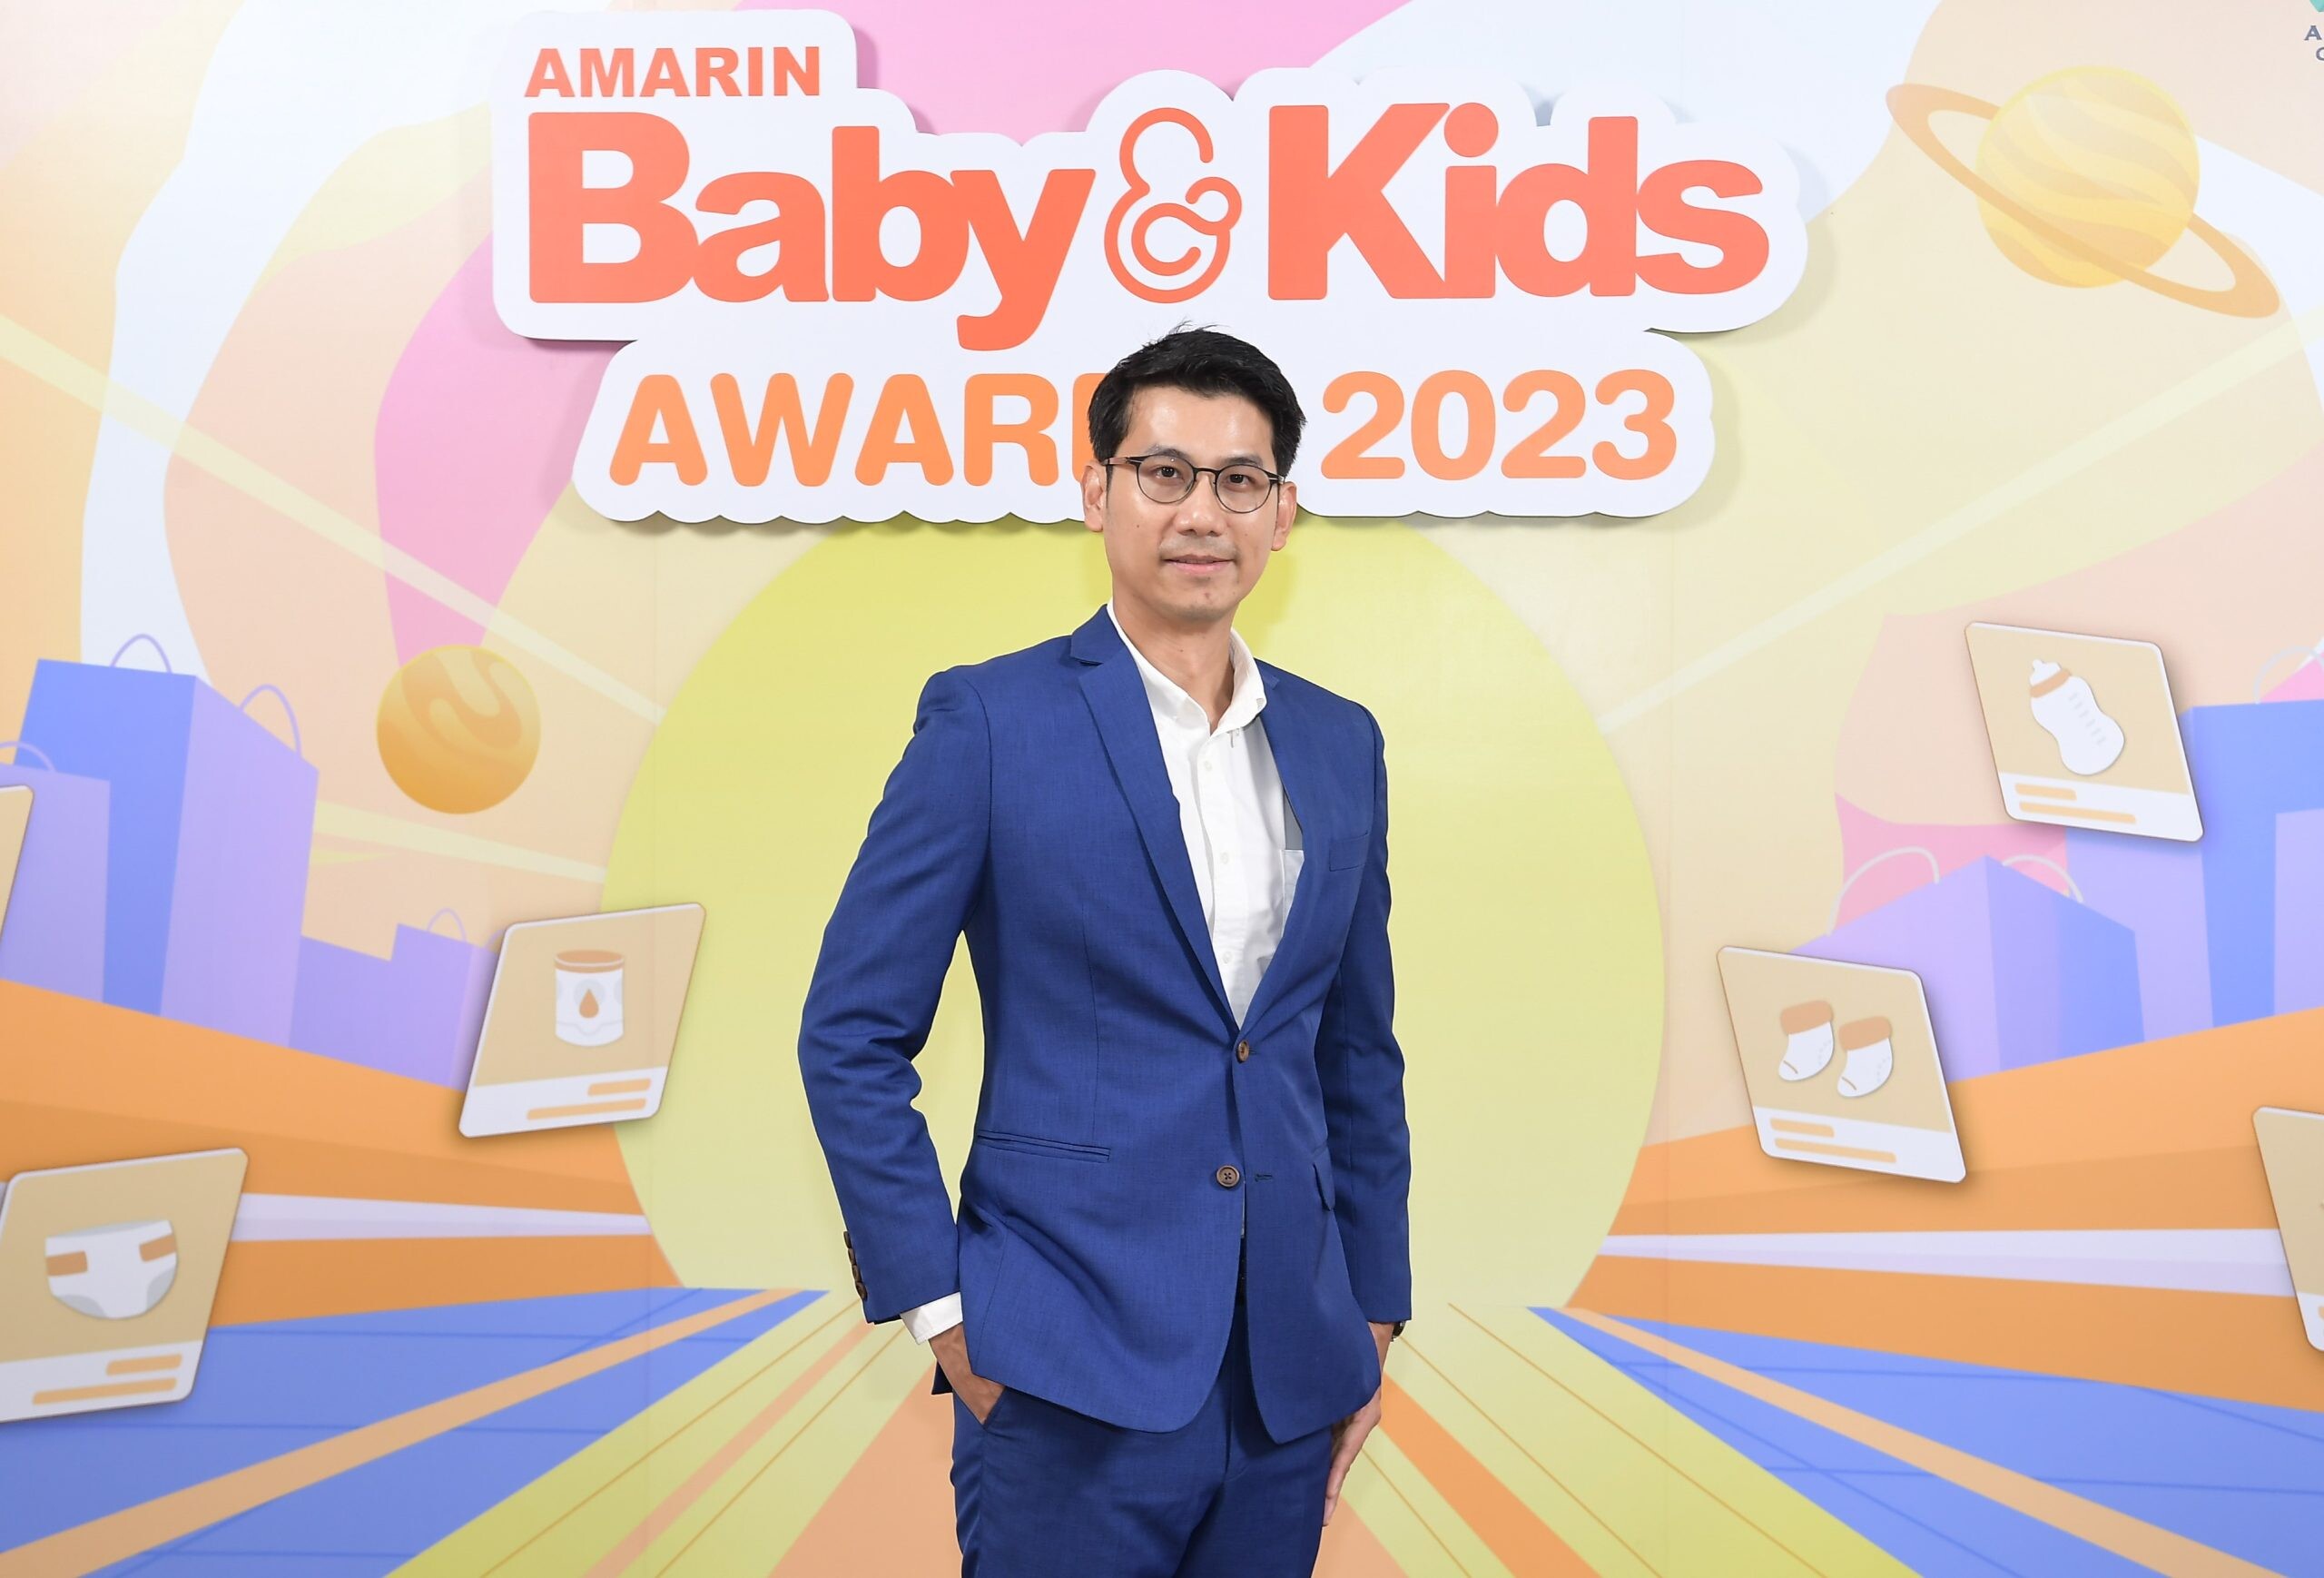 Amarin Baby &amp; Kids Awards 2023 มอบรางวัลแก่สุดยอดแบรนด์เพื่อแม่ลูก ปีที่ 5 สะท้อนความเป็นคอมมูนิตี้ที่รู้ใจแม่ลูกยุคใหม่มากที่สุด